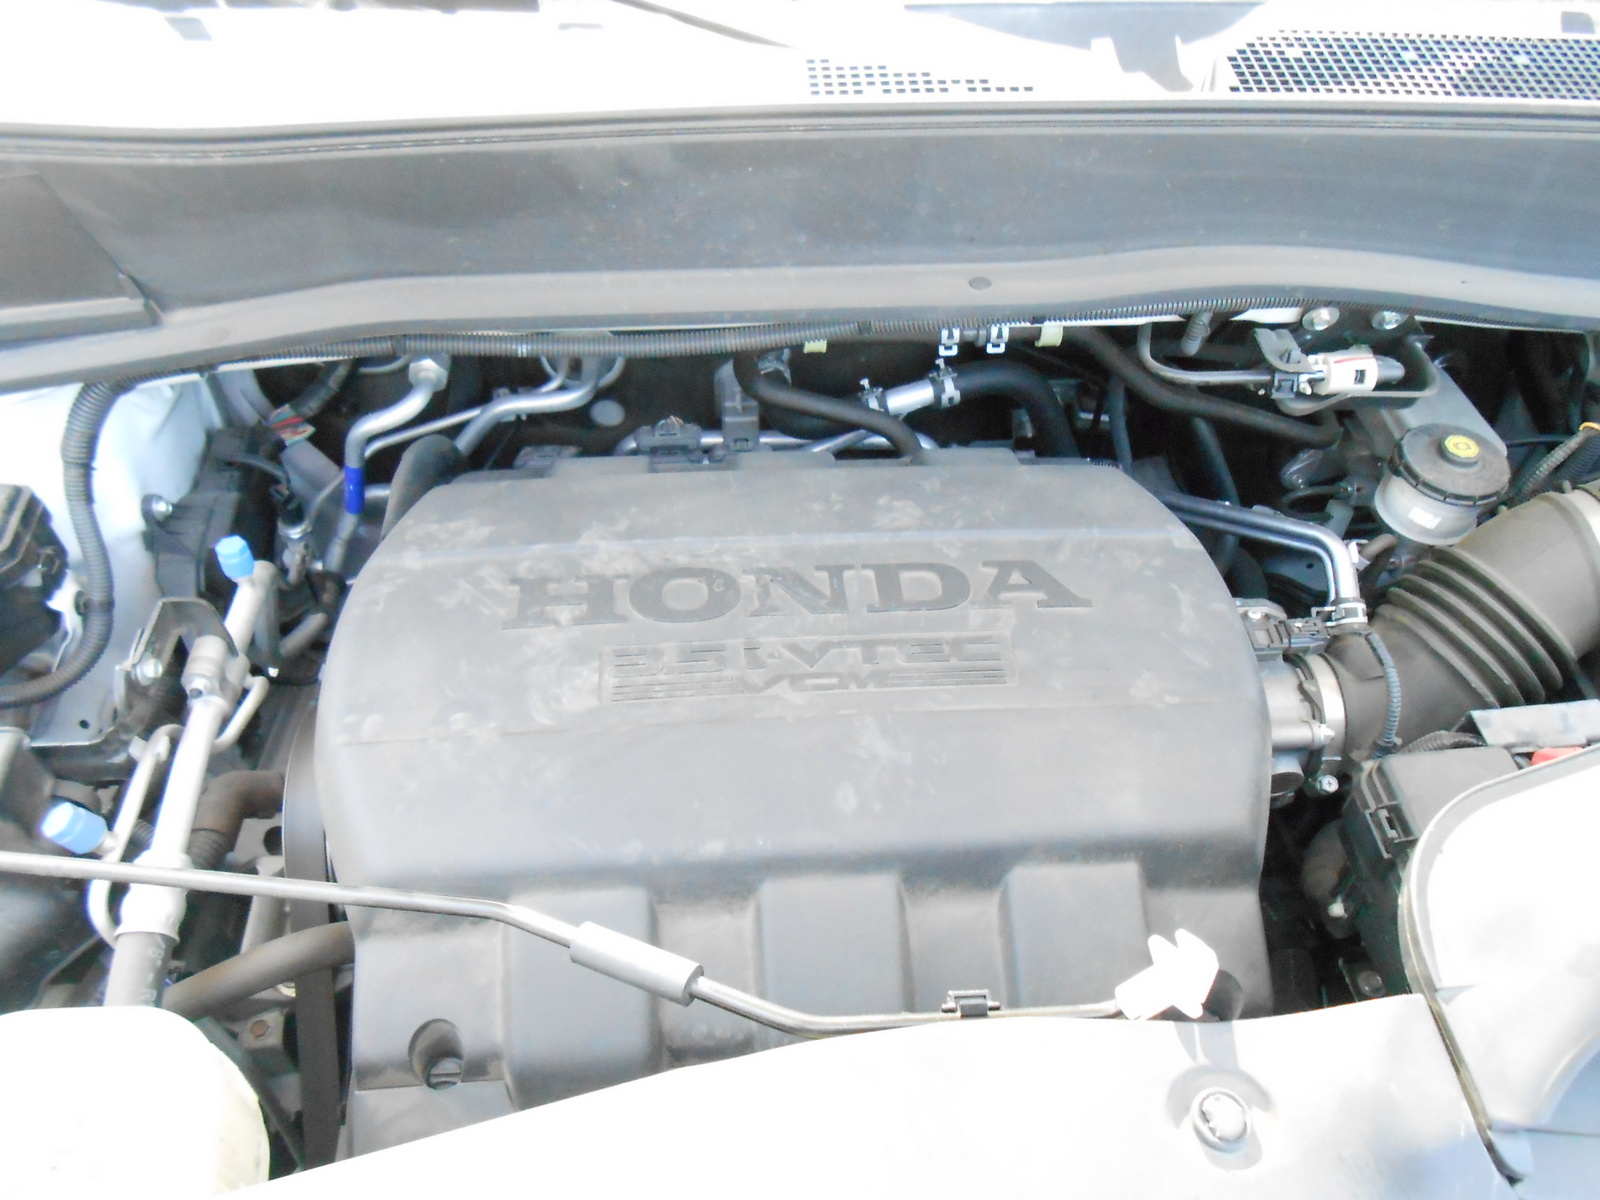 2012 Honda pilot variable cylinder management problems #1